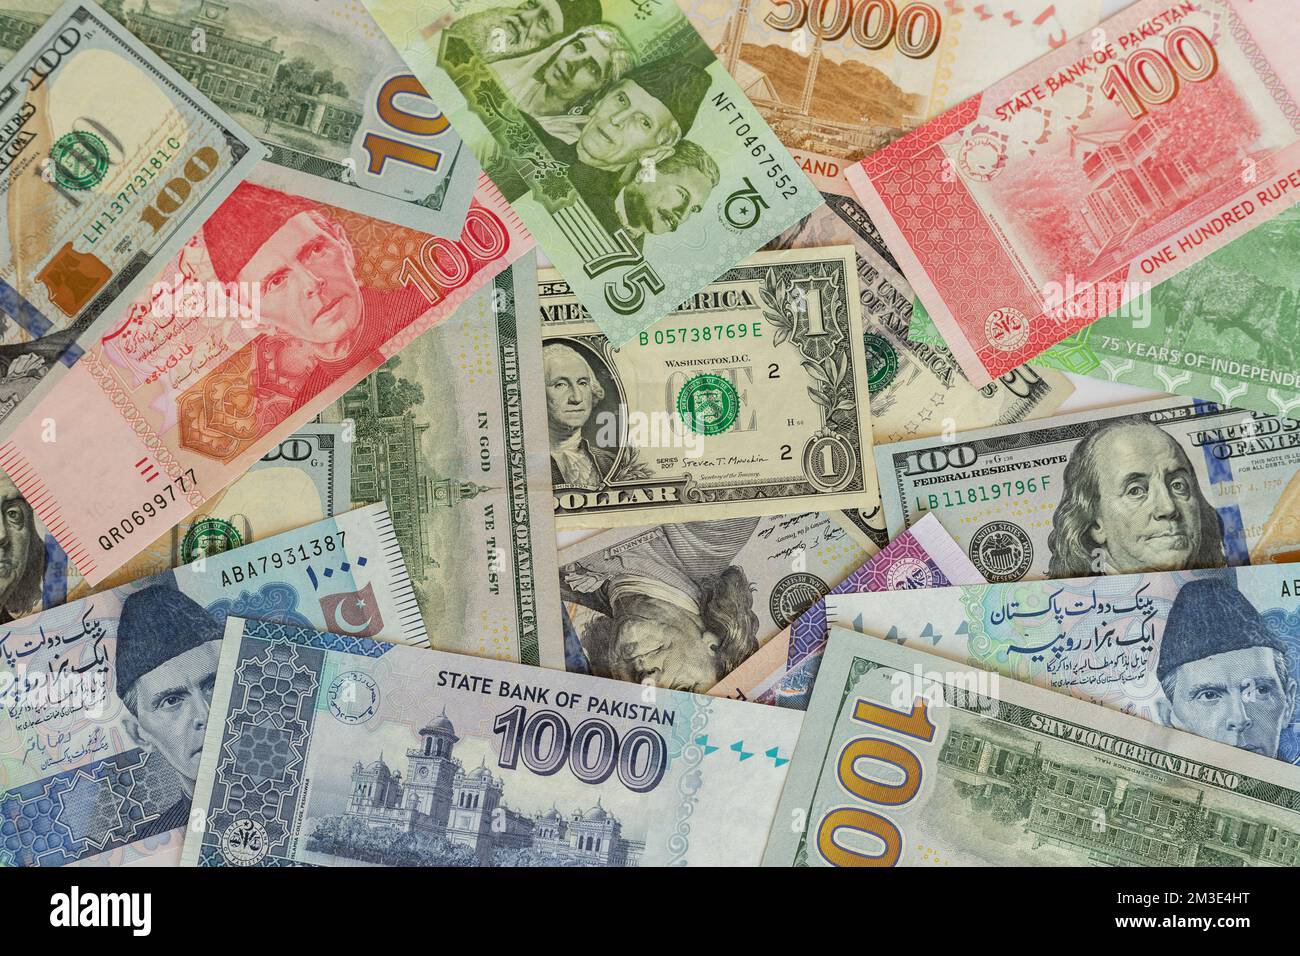 Pakistan bank notes with US dollar bills closeup Stock Photo